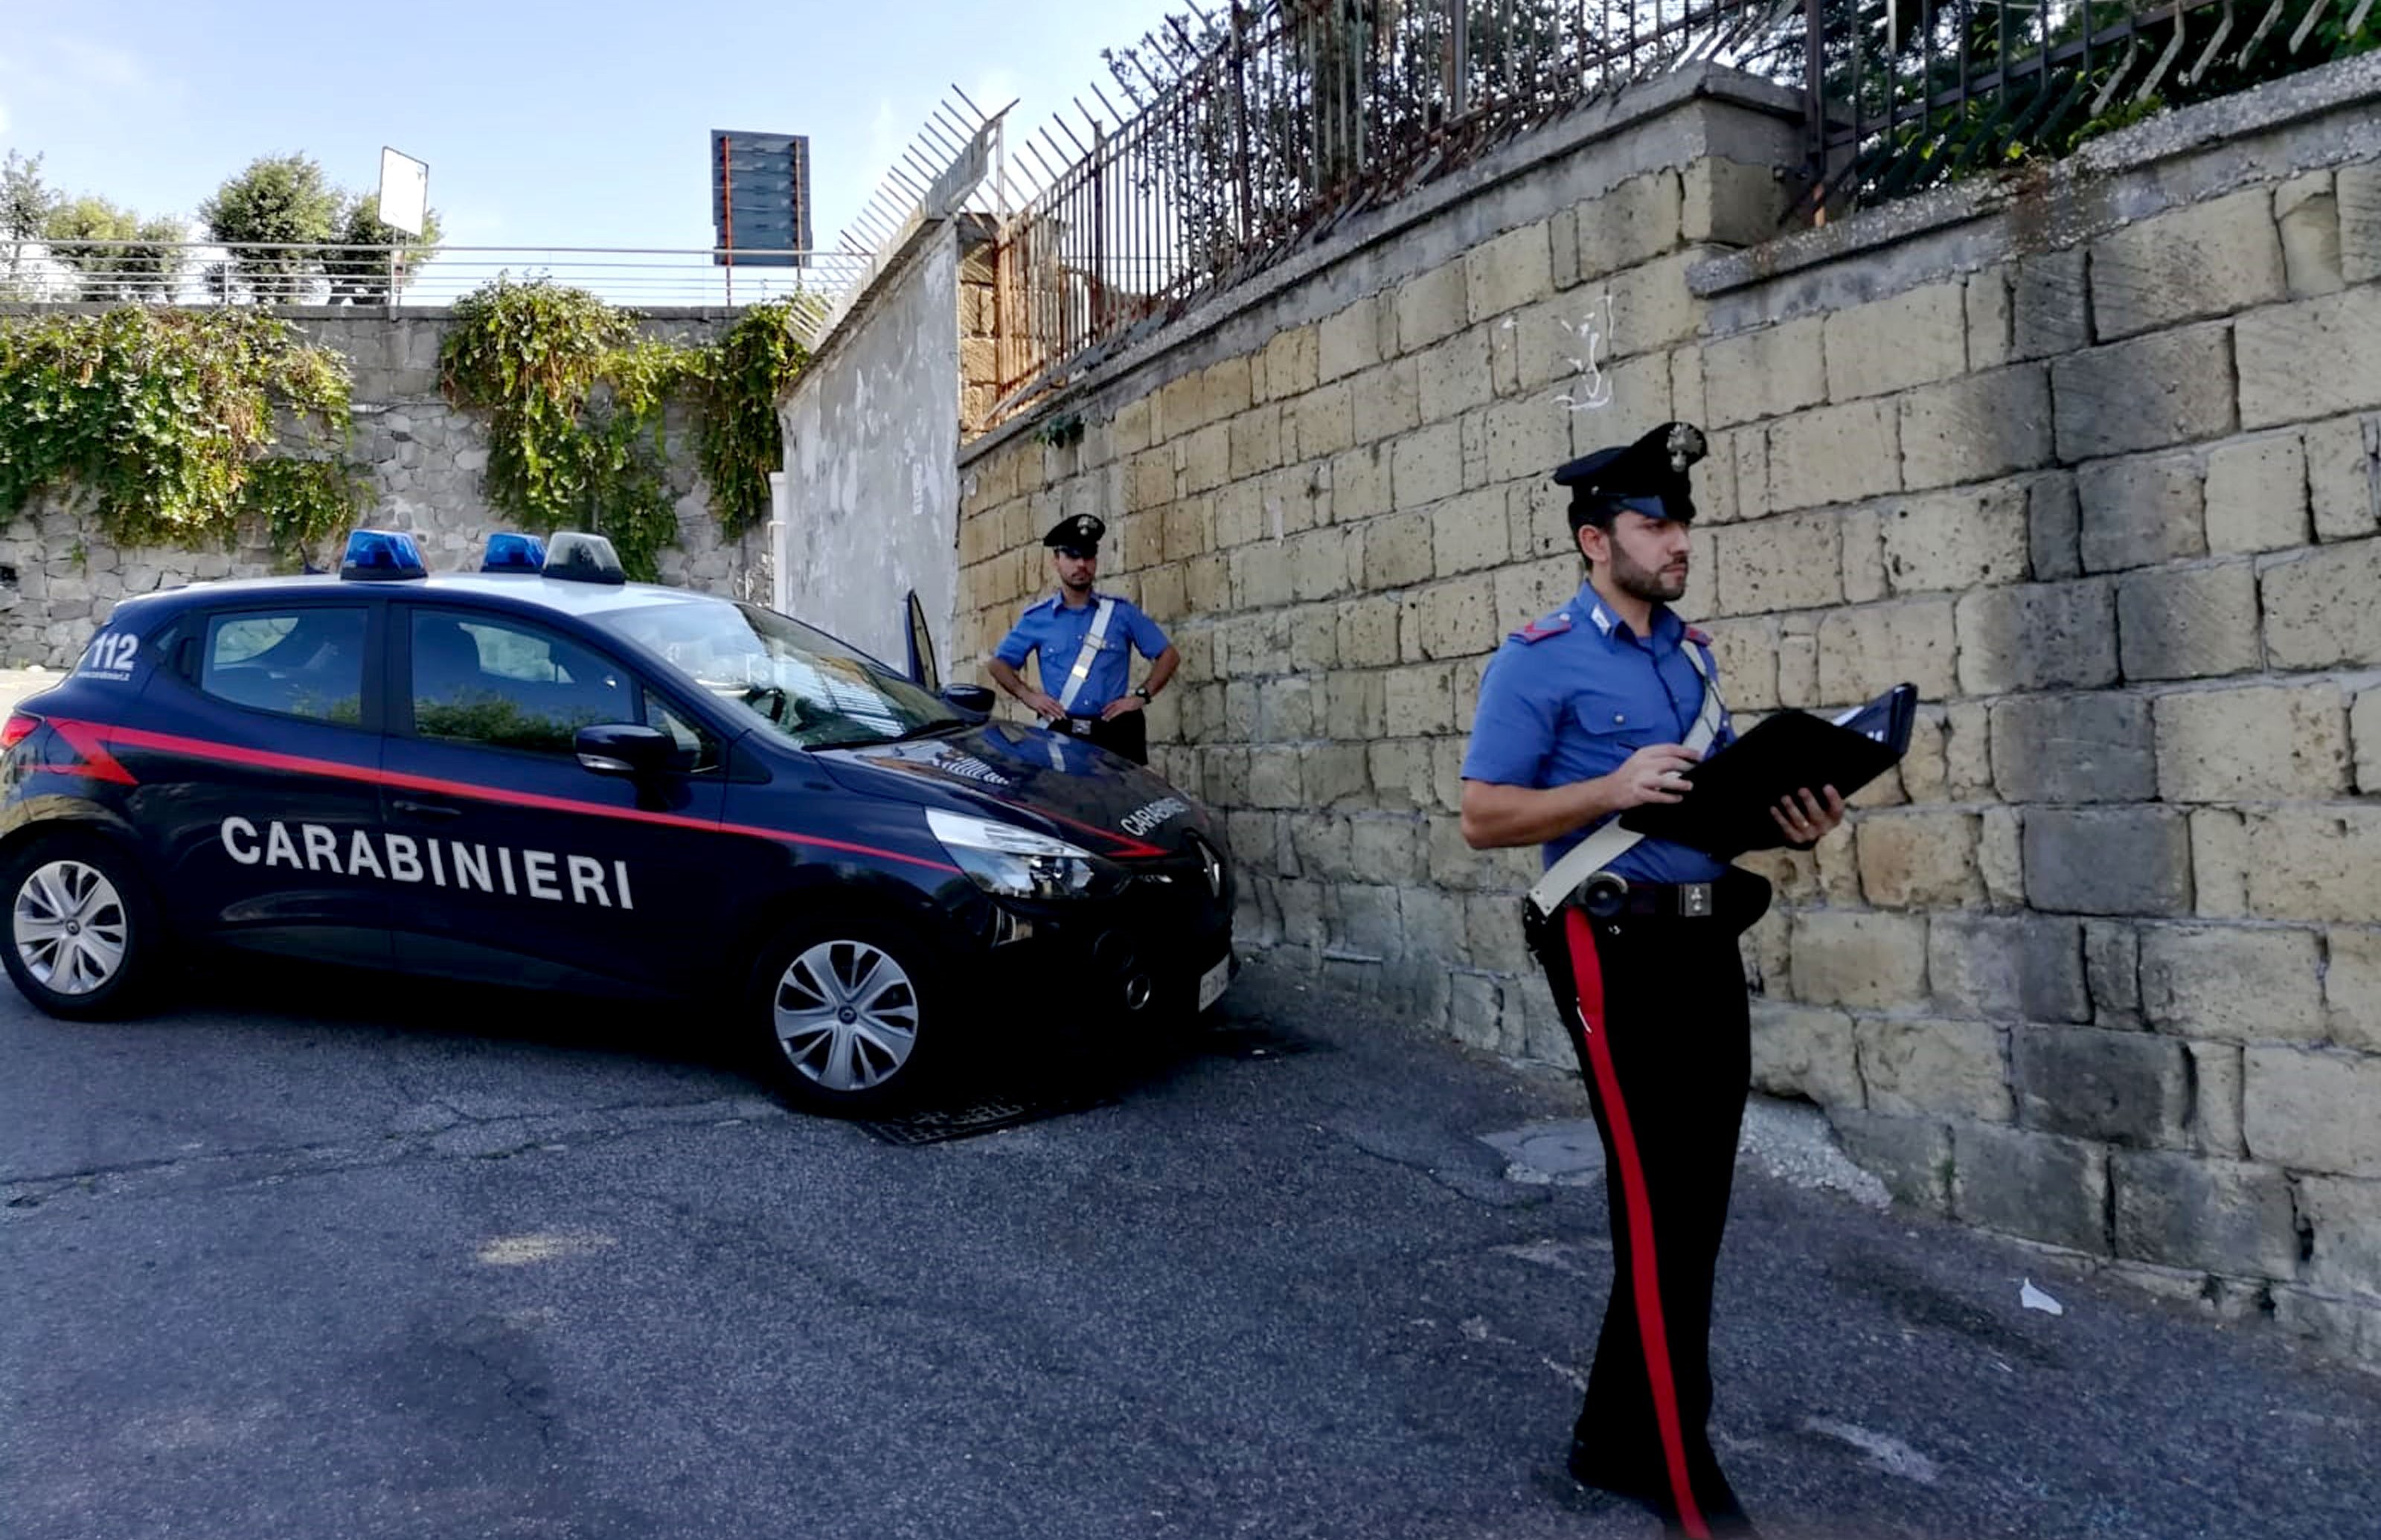 https://www.zerottounonews.it/wp-content/uploads/2018/09/i-carabinieri-ricostruiscono-sul-posto-le-fasi-dellaccaduto.jpg